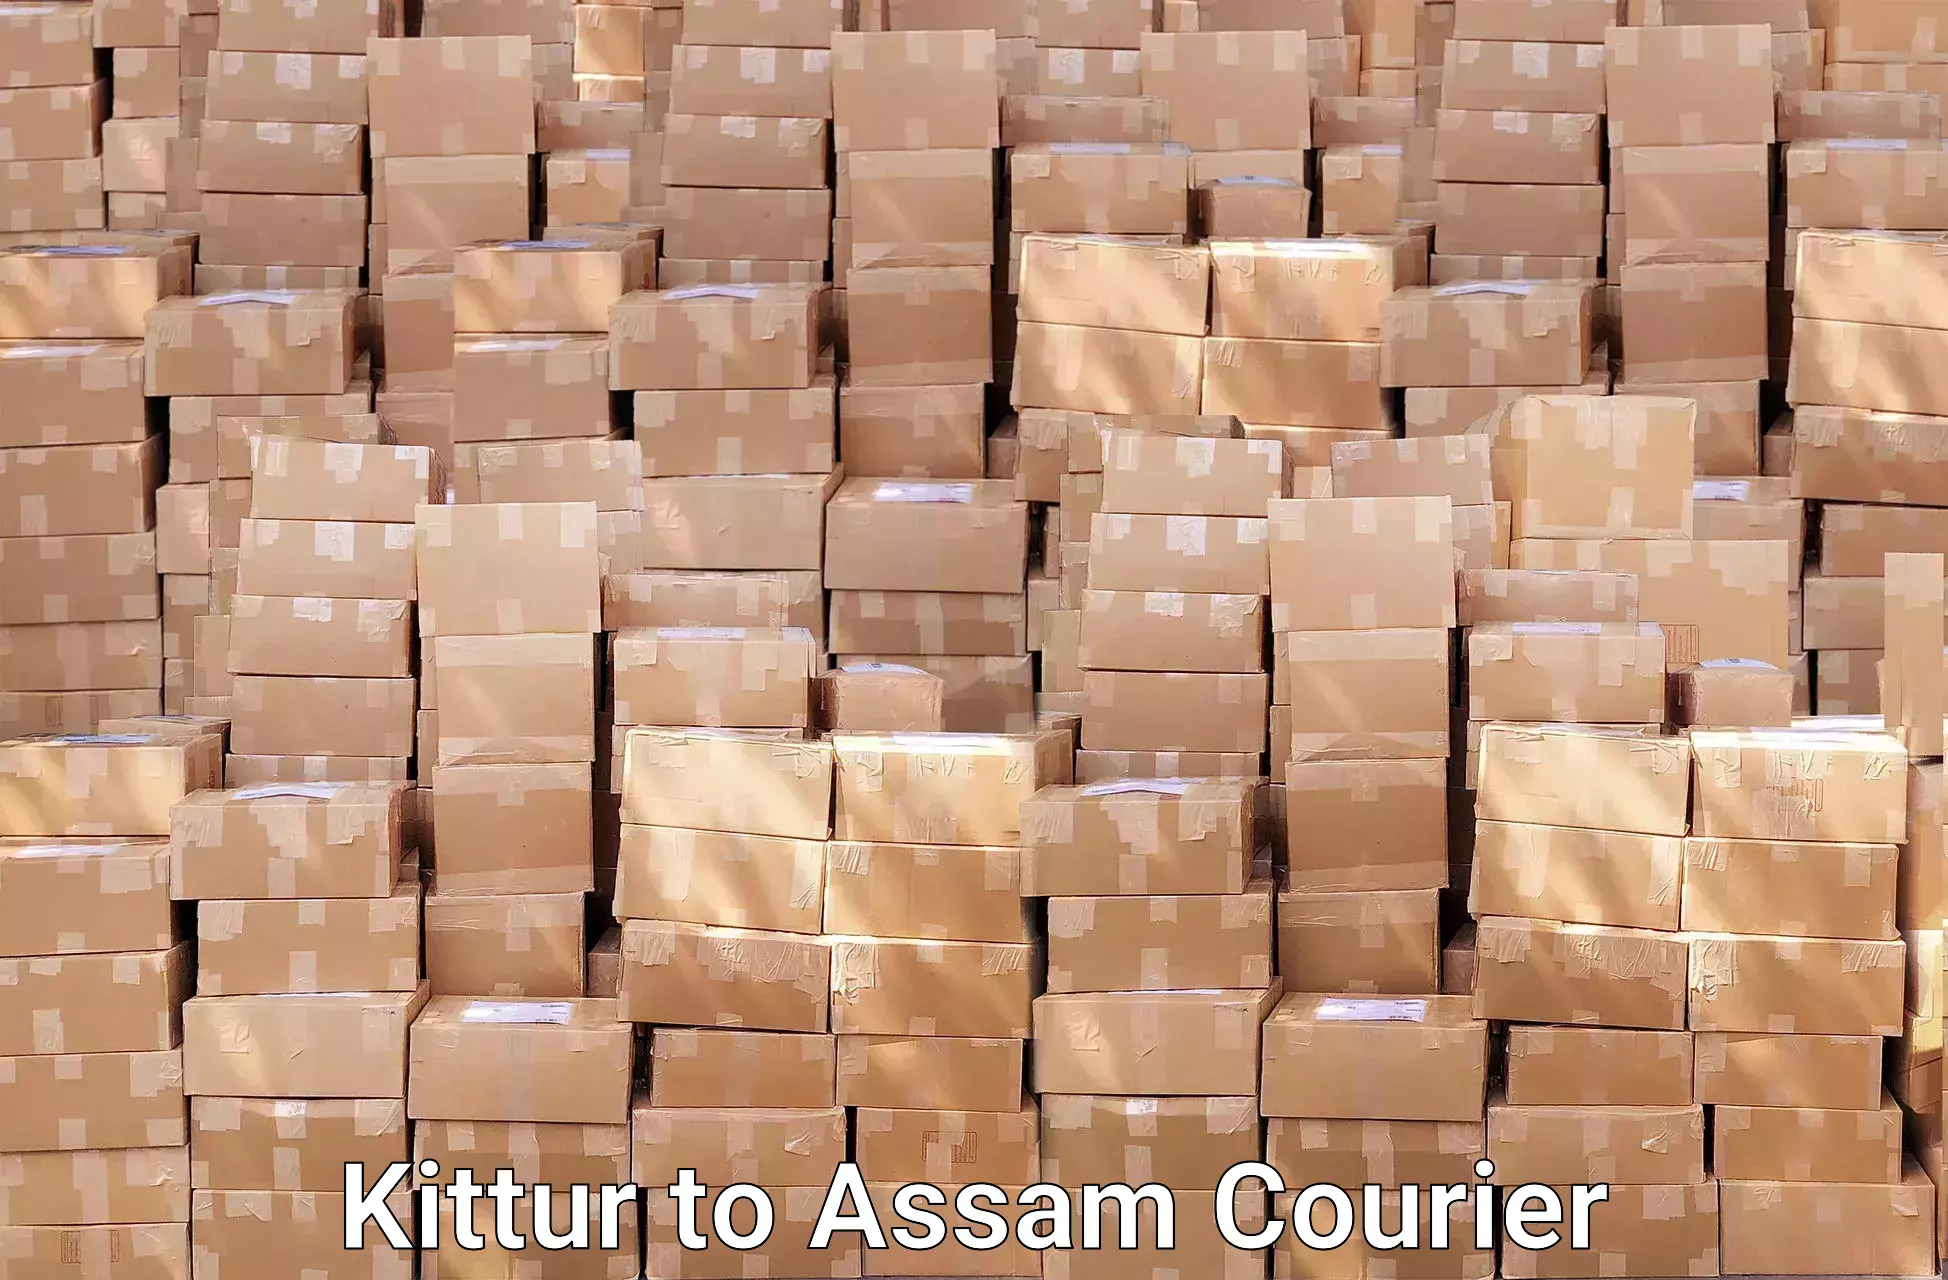 Furniture moving experts Kittur to Kampur